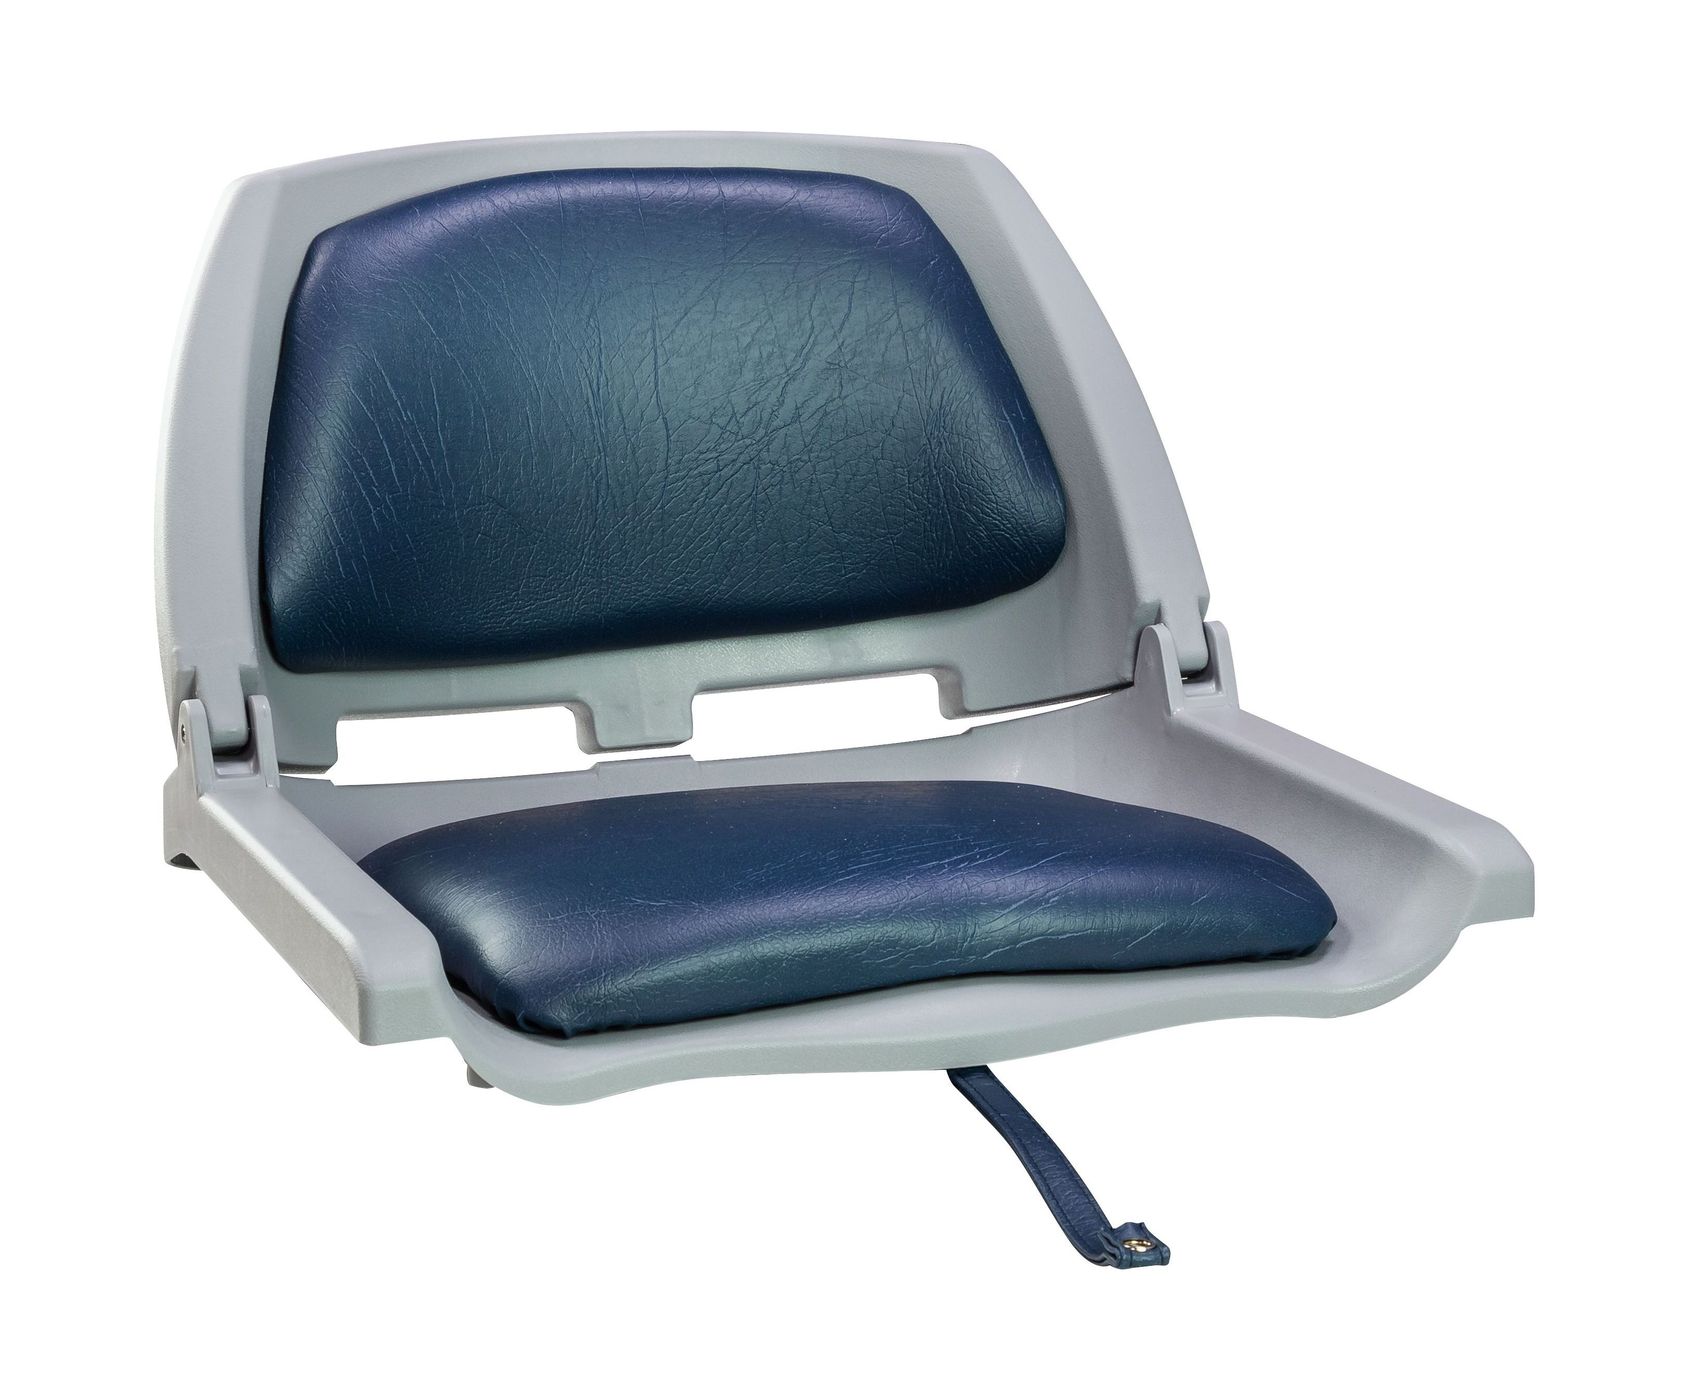 Кресло складное мягкое TRAVELER, цвет серый/синий 1061112C кресло шезлонг складное со съемным матрасом и декоративной подушкой подножка haushalt hhk7 bl синий